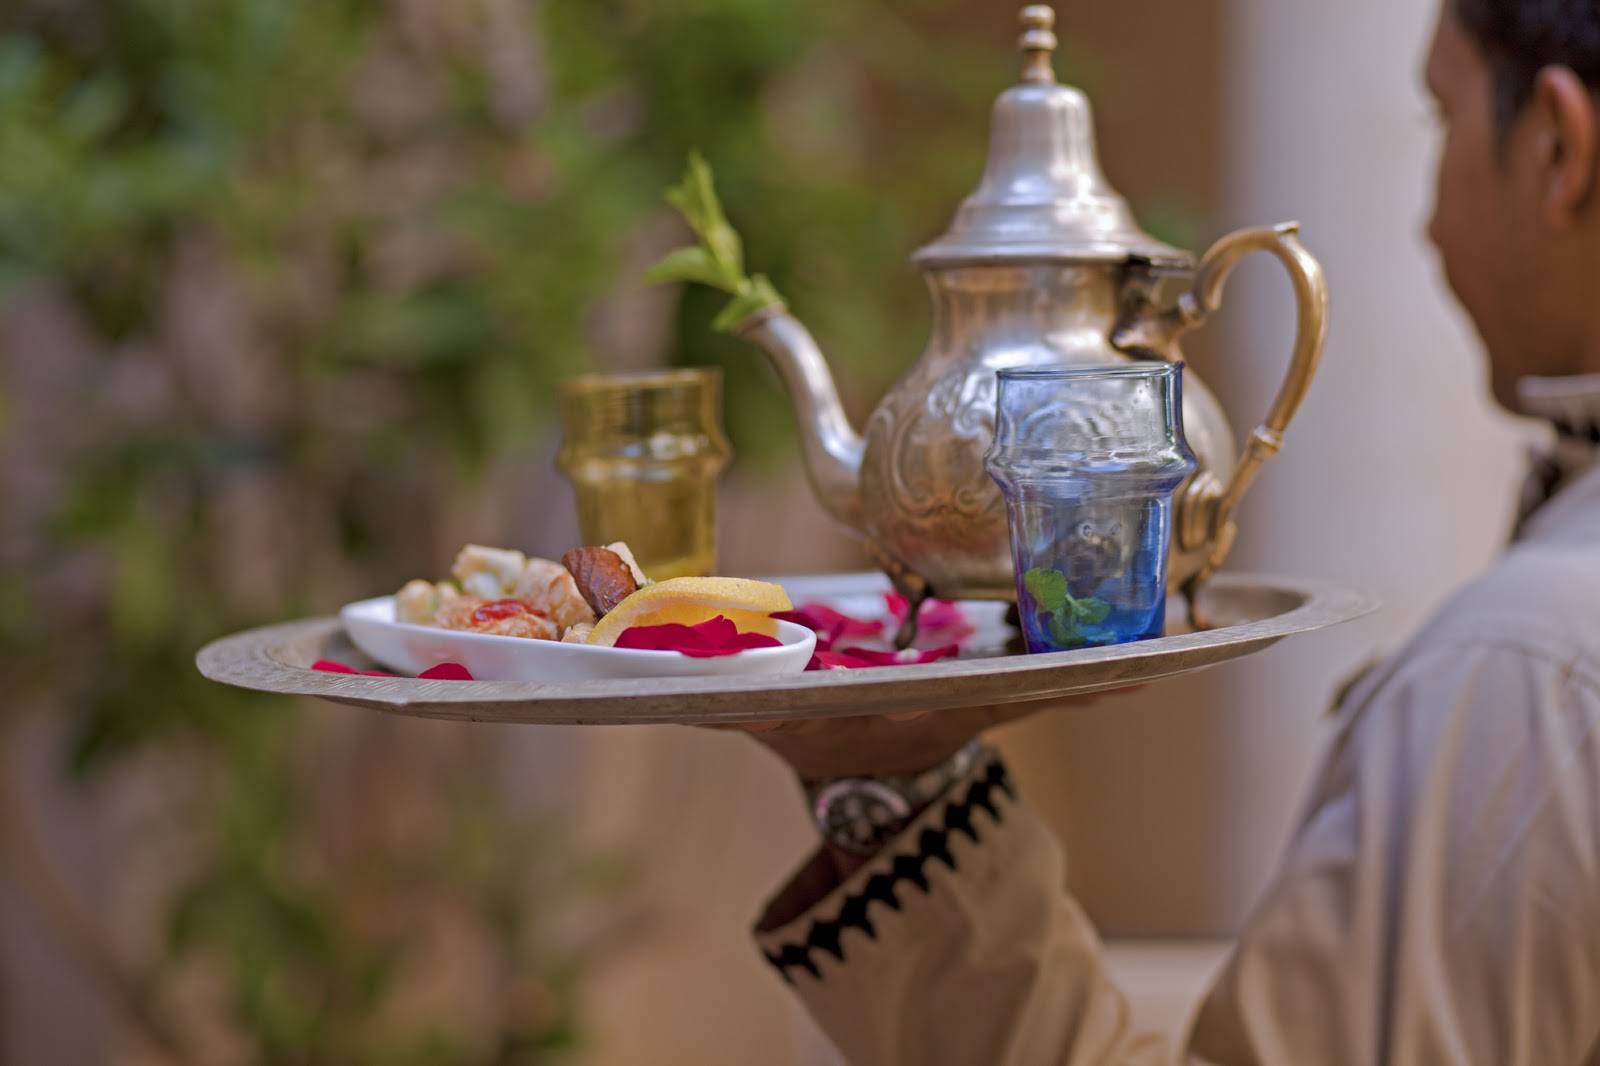 Марокканский мятный чай – рецепт с экскурсом в историю